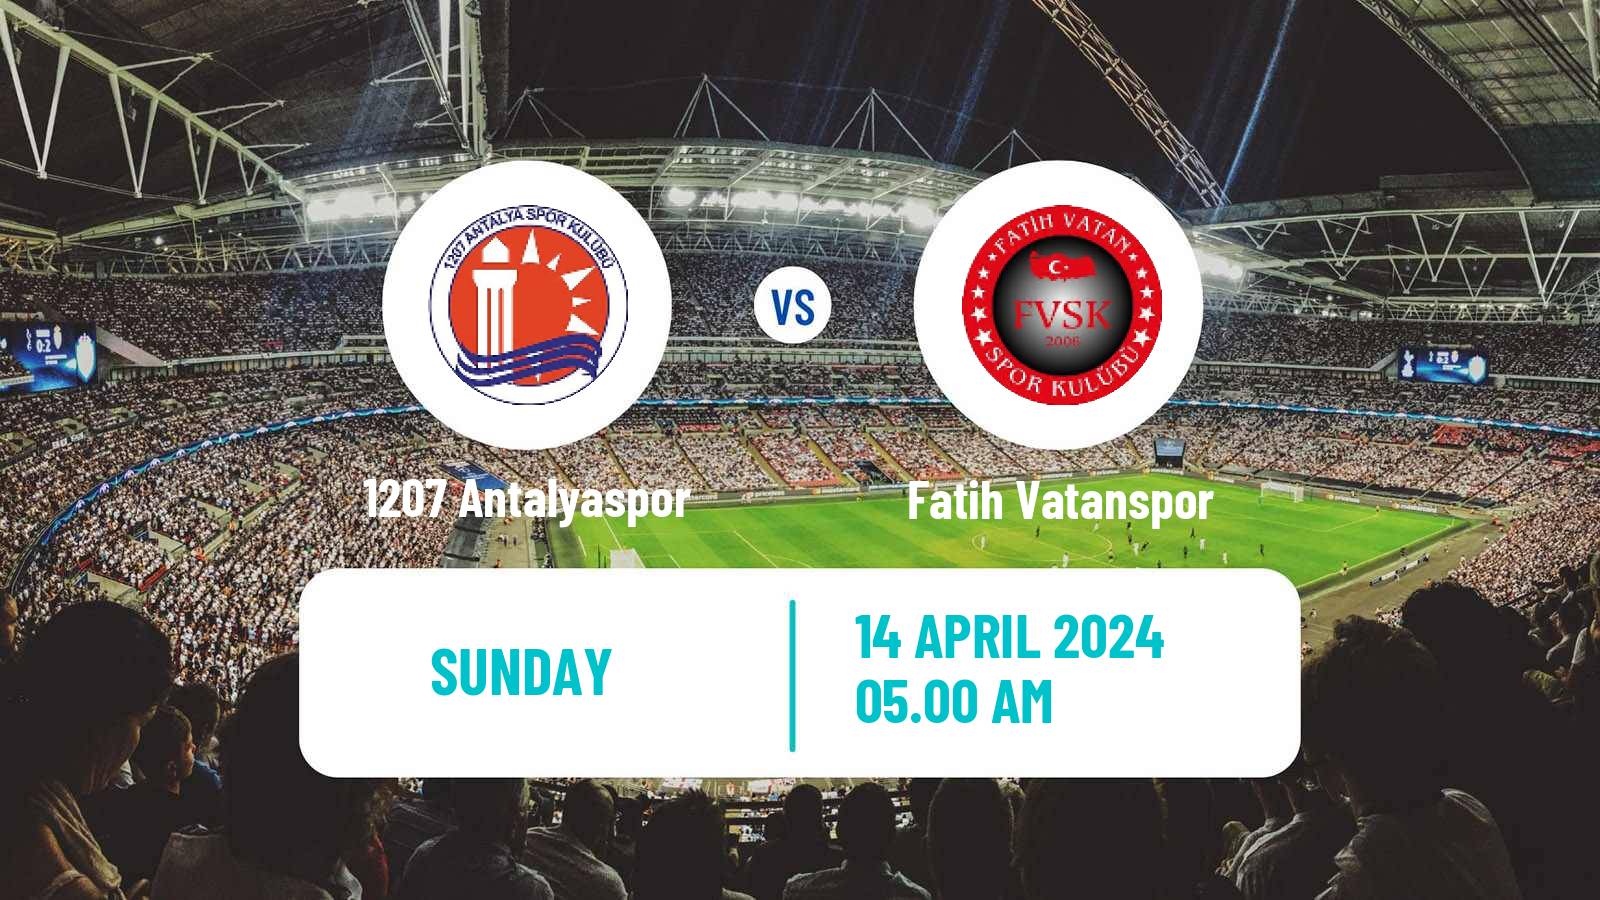 Soccer Turkish Super Lig Women 1207 Antalyaspor - Fatih Vatanspor